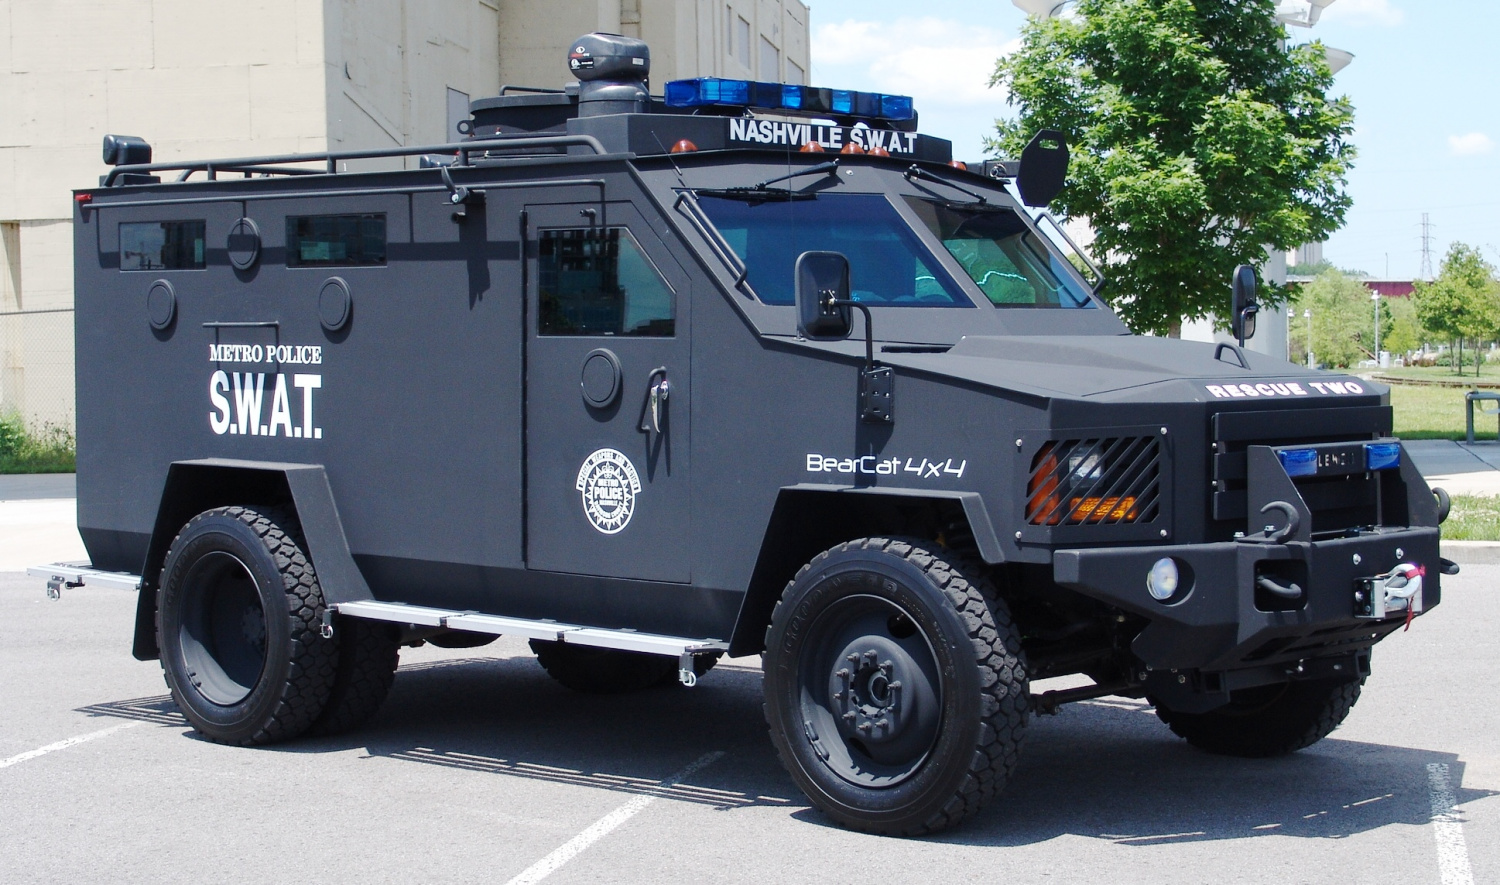 swat vehicles - Nashville Swat Meteo Police Swat BearCat 4x4